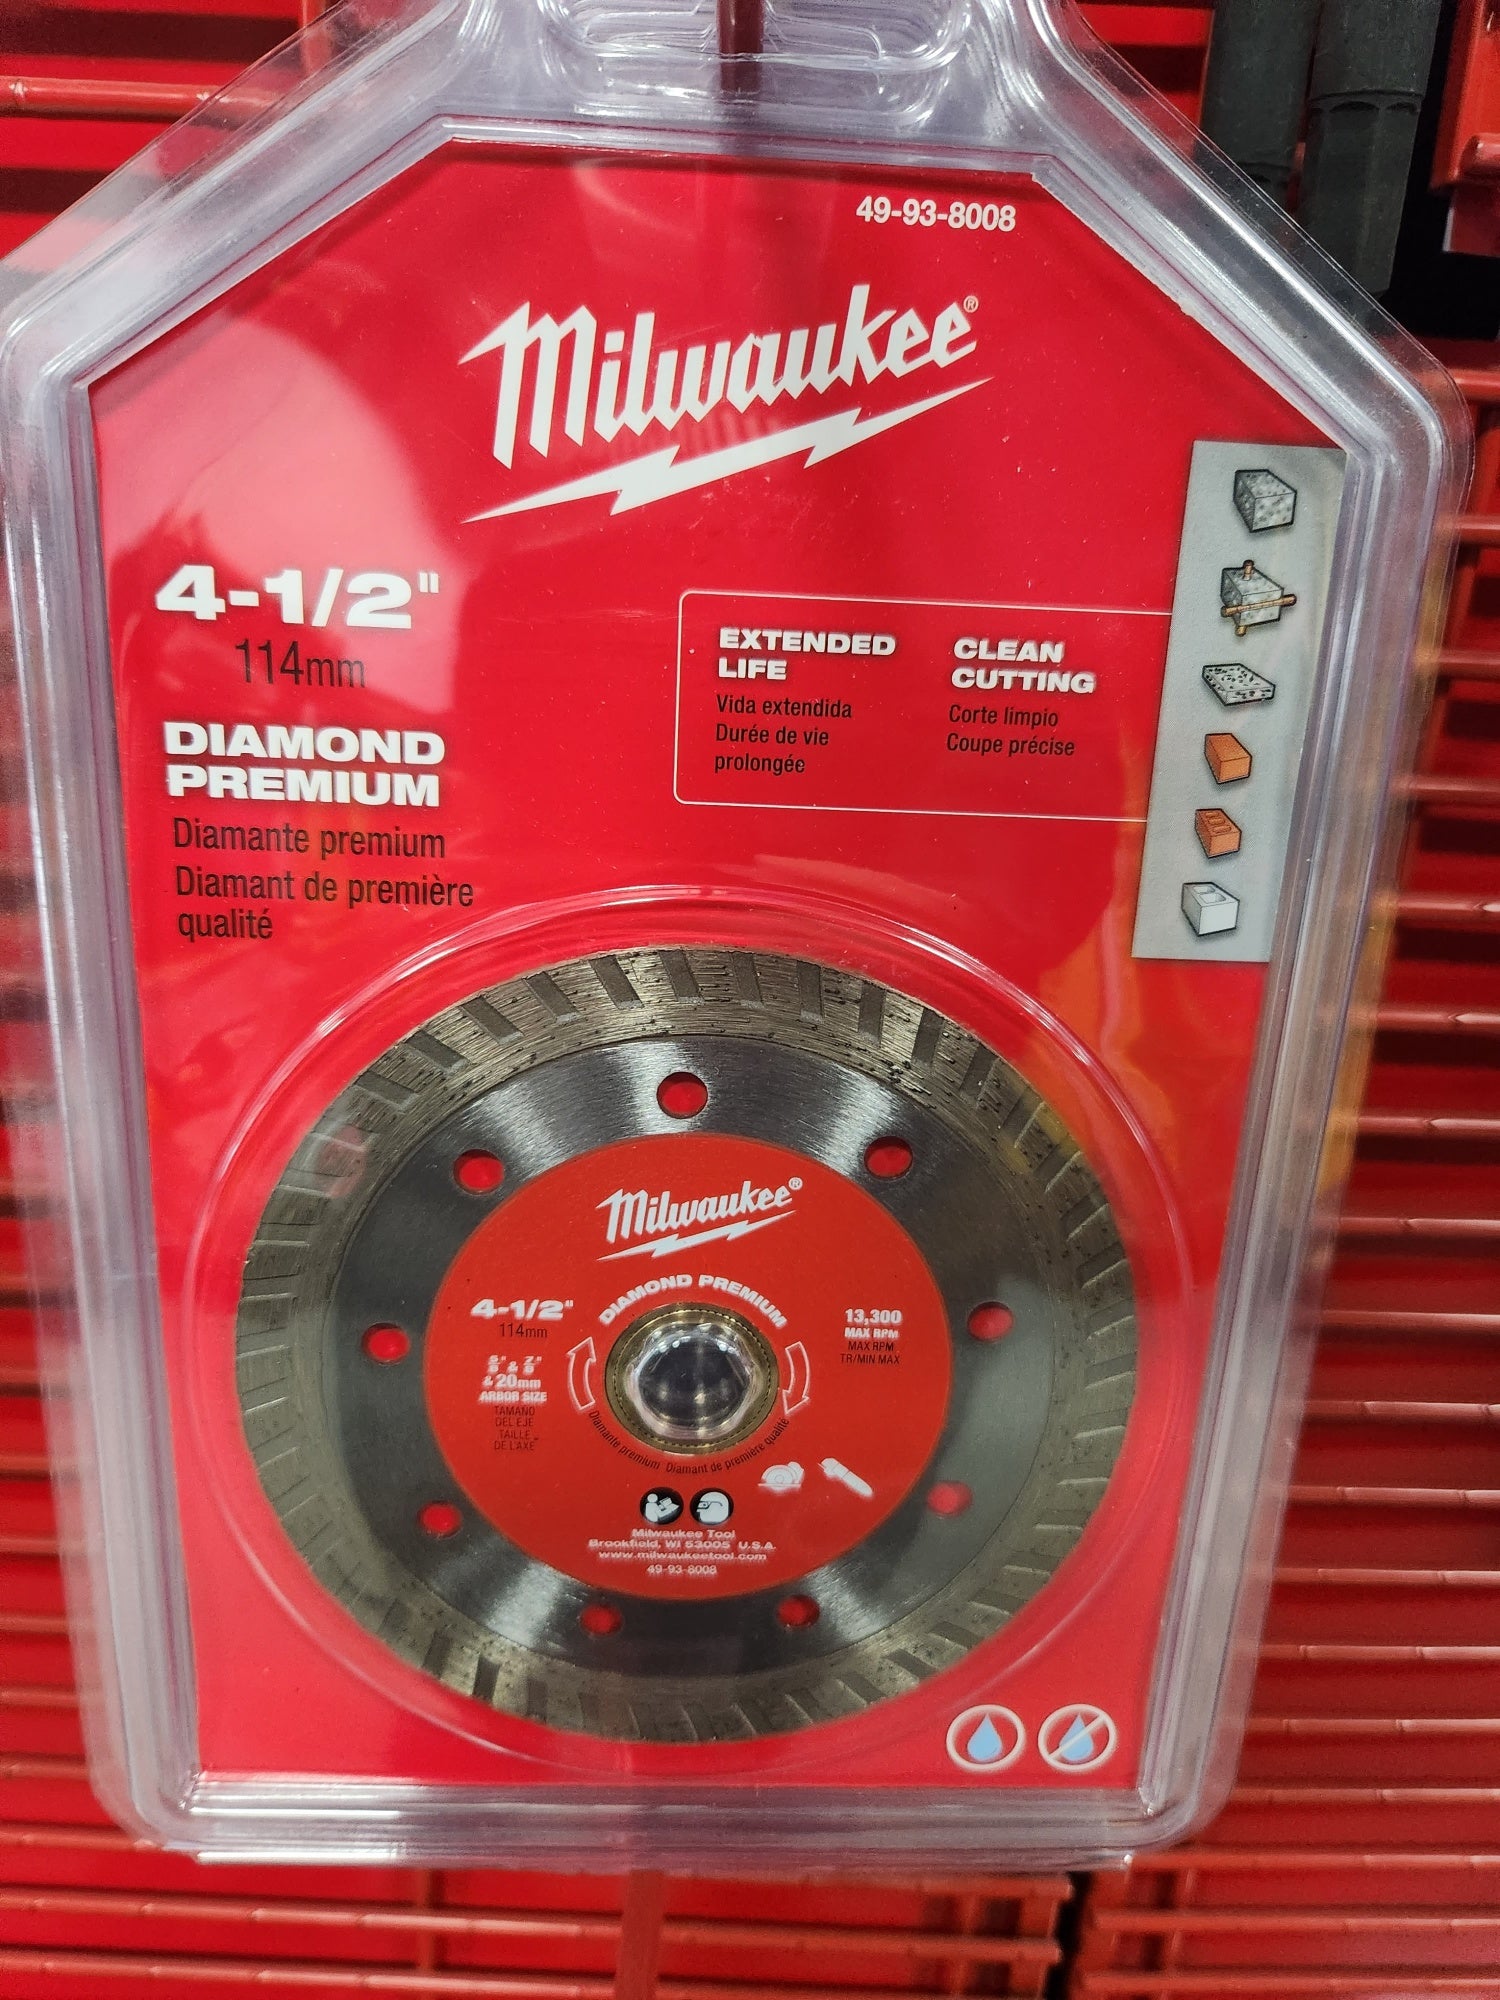 Milwaukee 4 1/2" Diamond Premium Turbo -- 49-93-8008